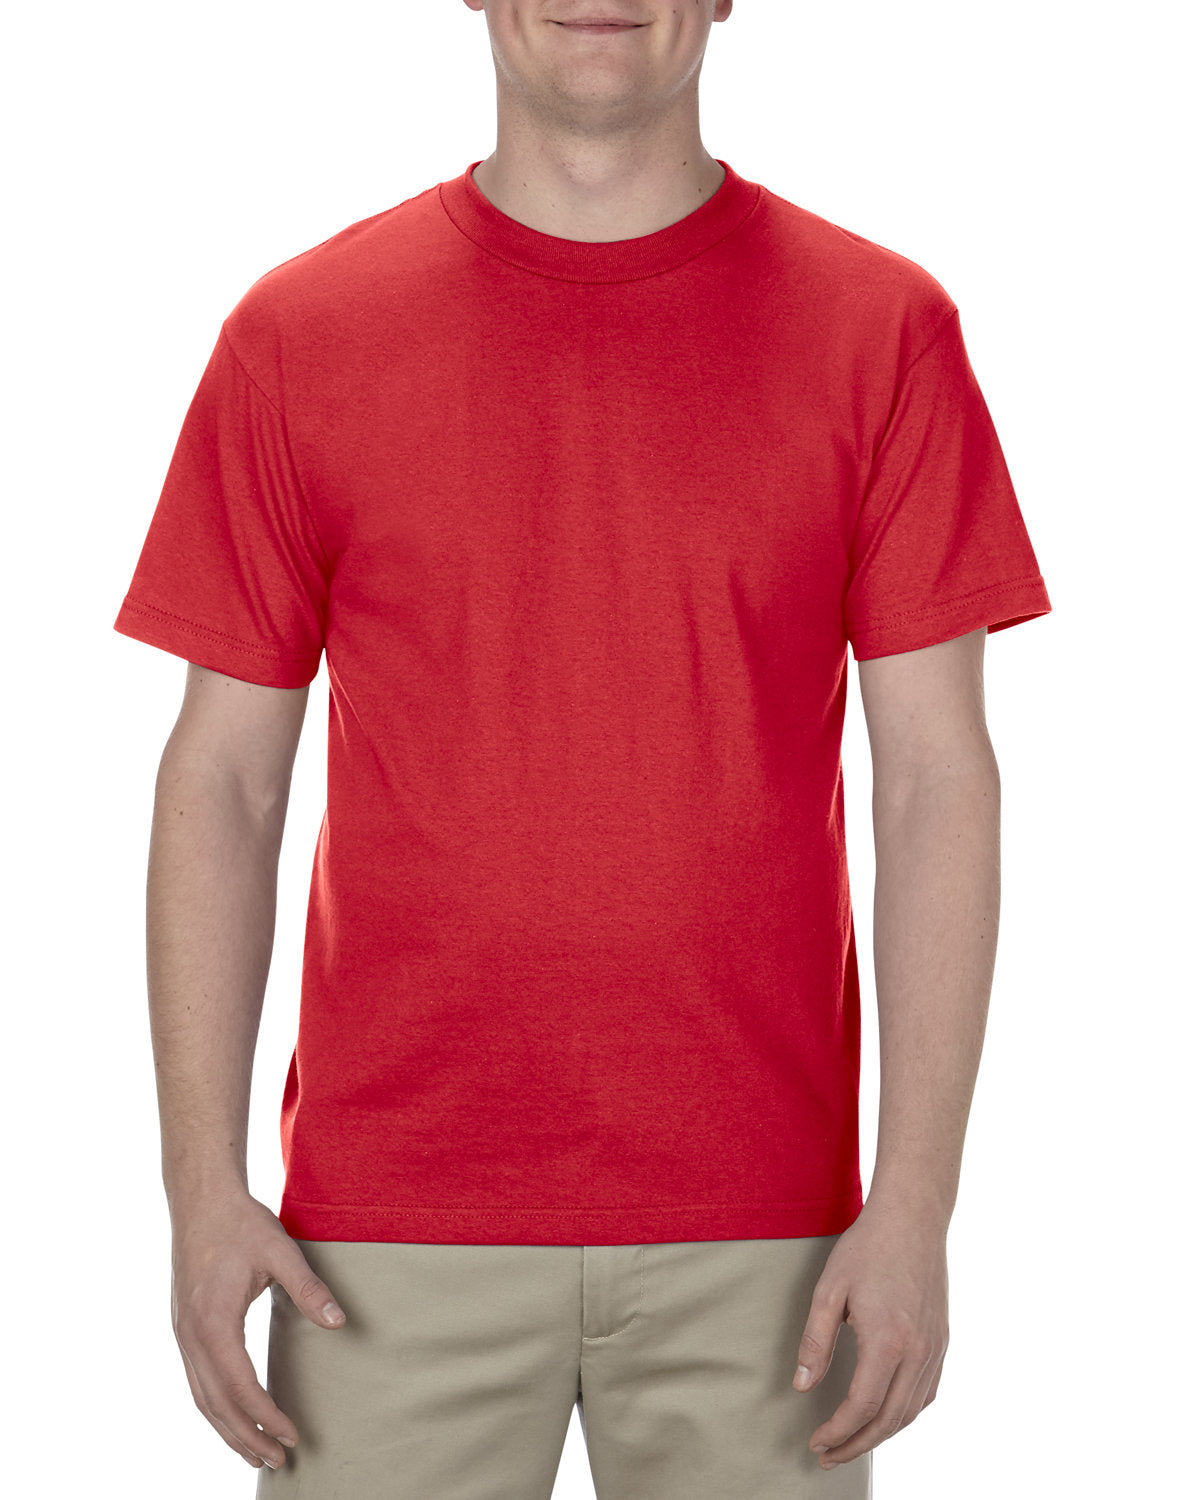 Alstyle Adult 6.0 oz., 100% Cotton T-Shirt